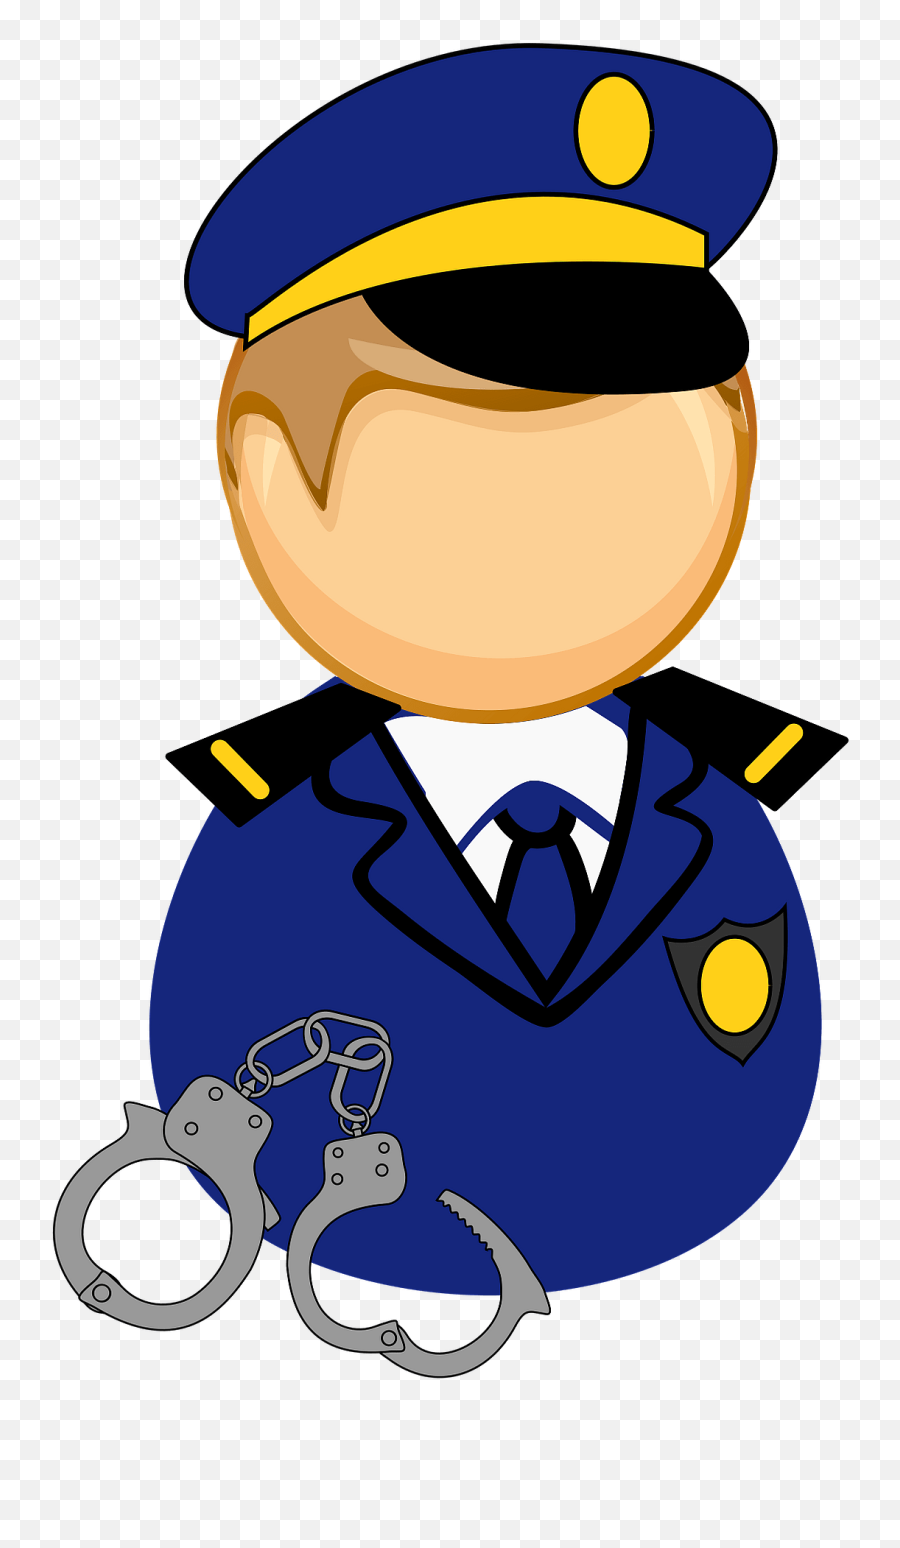 First Responder - Policeman Clipart Free Download Breakfast Cereal Market Share Emoji,Handcuffs Emoji